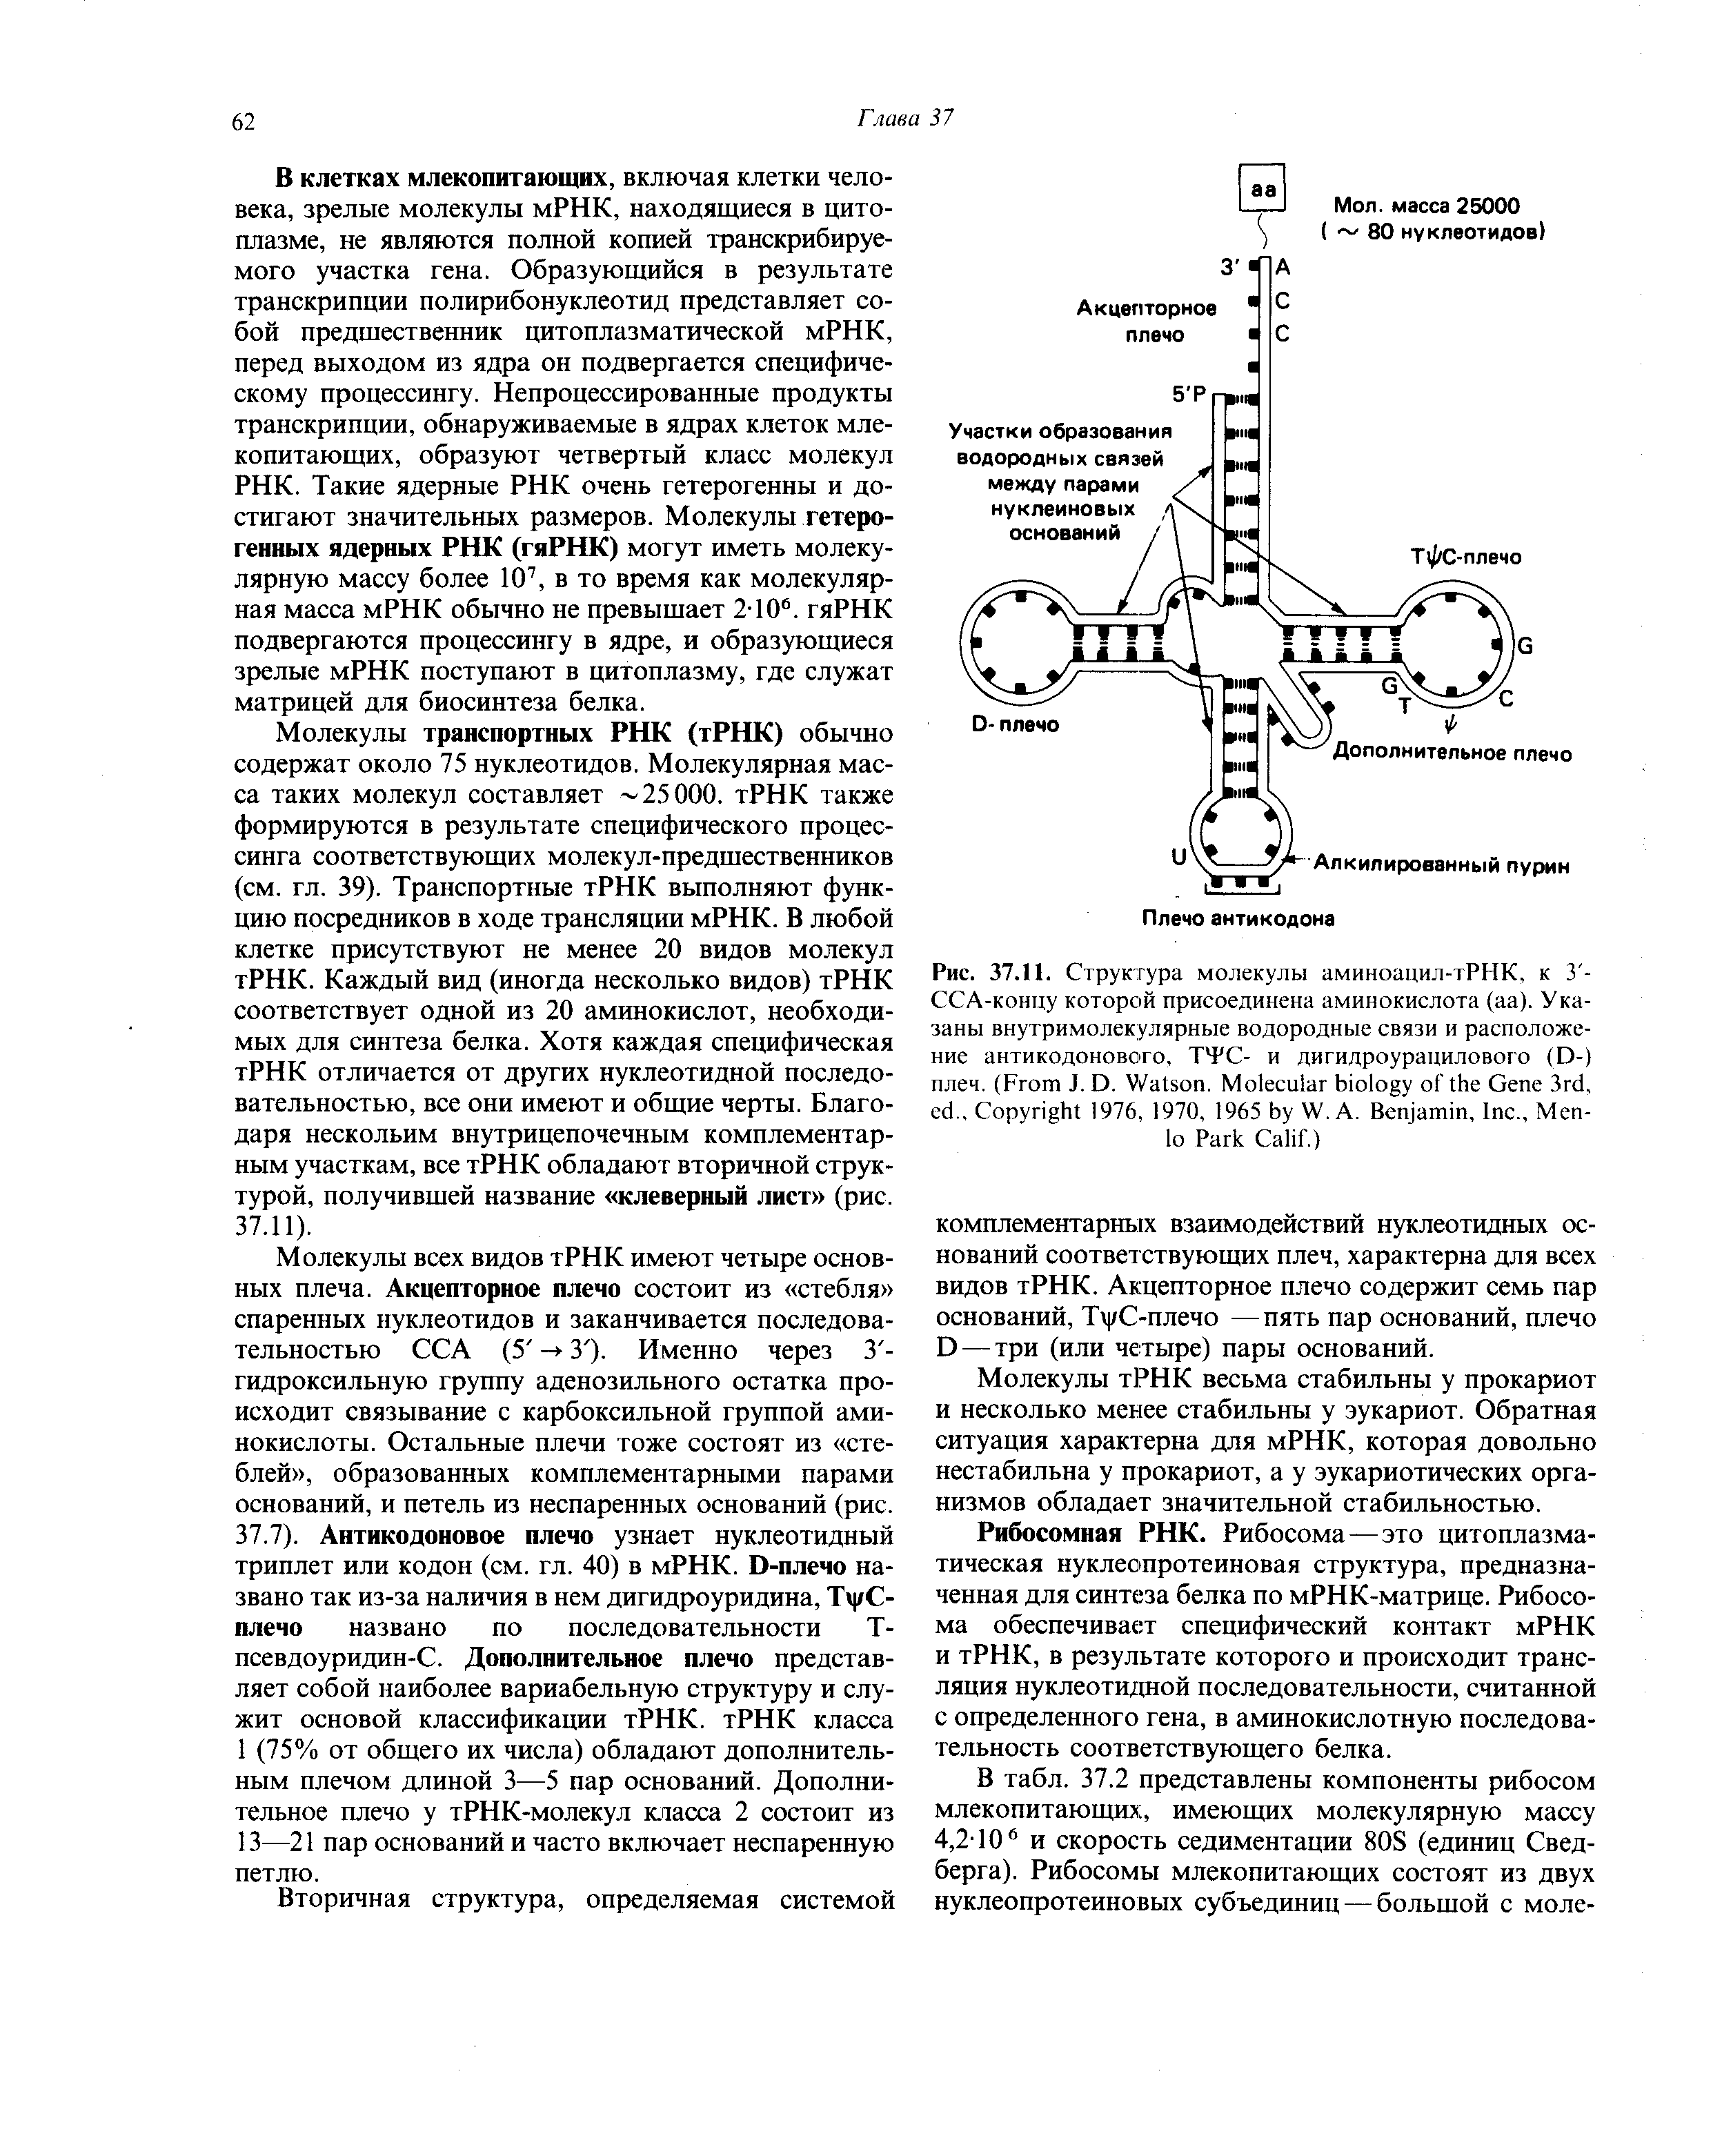 Рис. 37.11. Структура молекулы аминоацил-тРНК, к 3 -ССА-концу которой присоединена аминокислота (аа). Указаны внутримолекулярные водородные связи и расположение антикодонового, ТТС- и дигидроурацилового (D-) плеч. (F J. D. W . M G 3 , .. C 1976, 1970, 1965 W. A. B , I ., M P C .)...